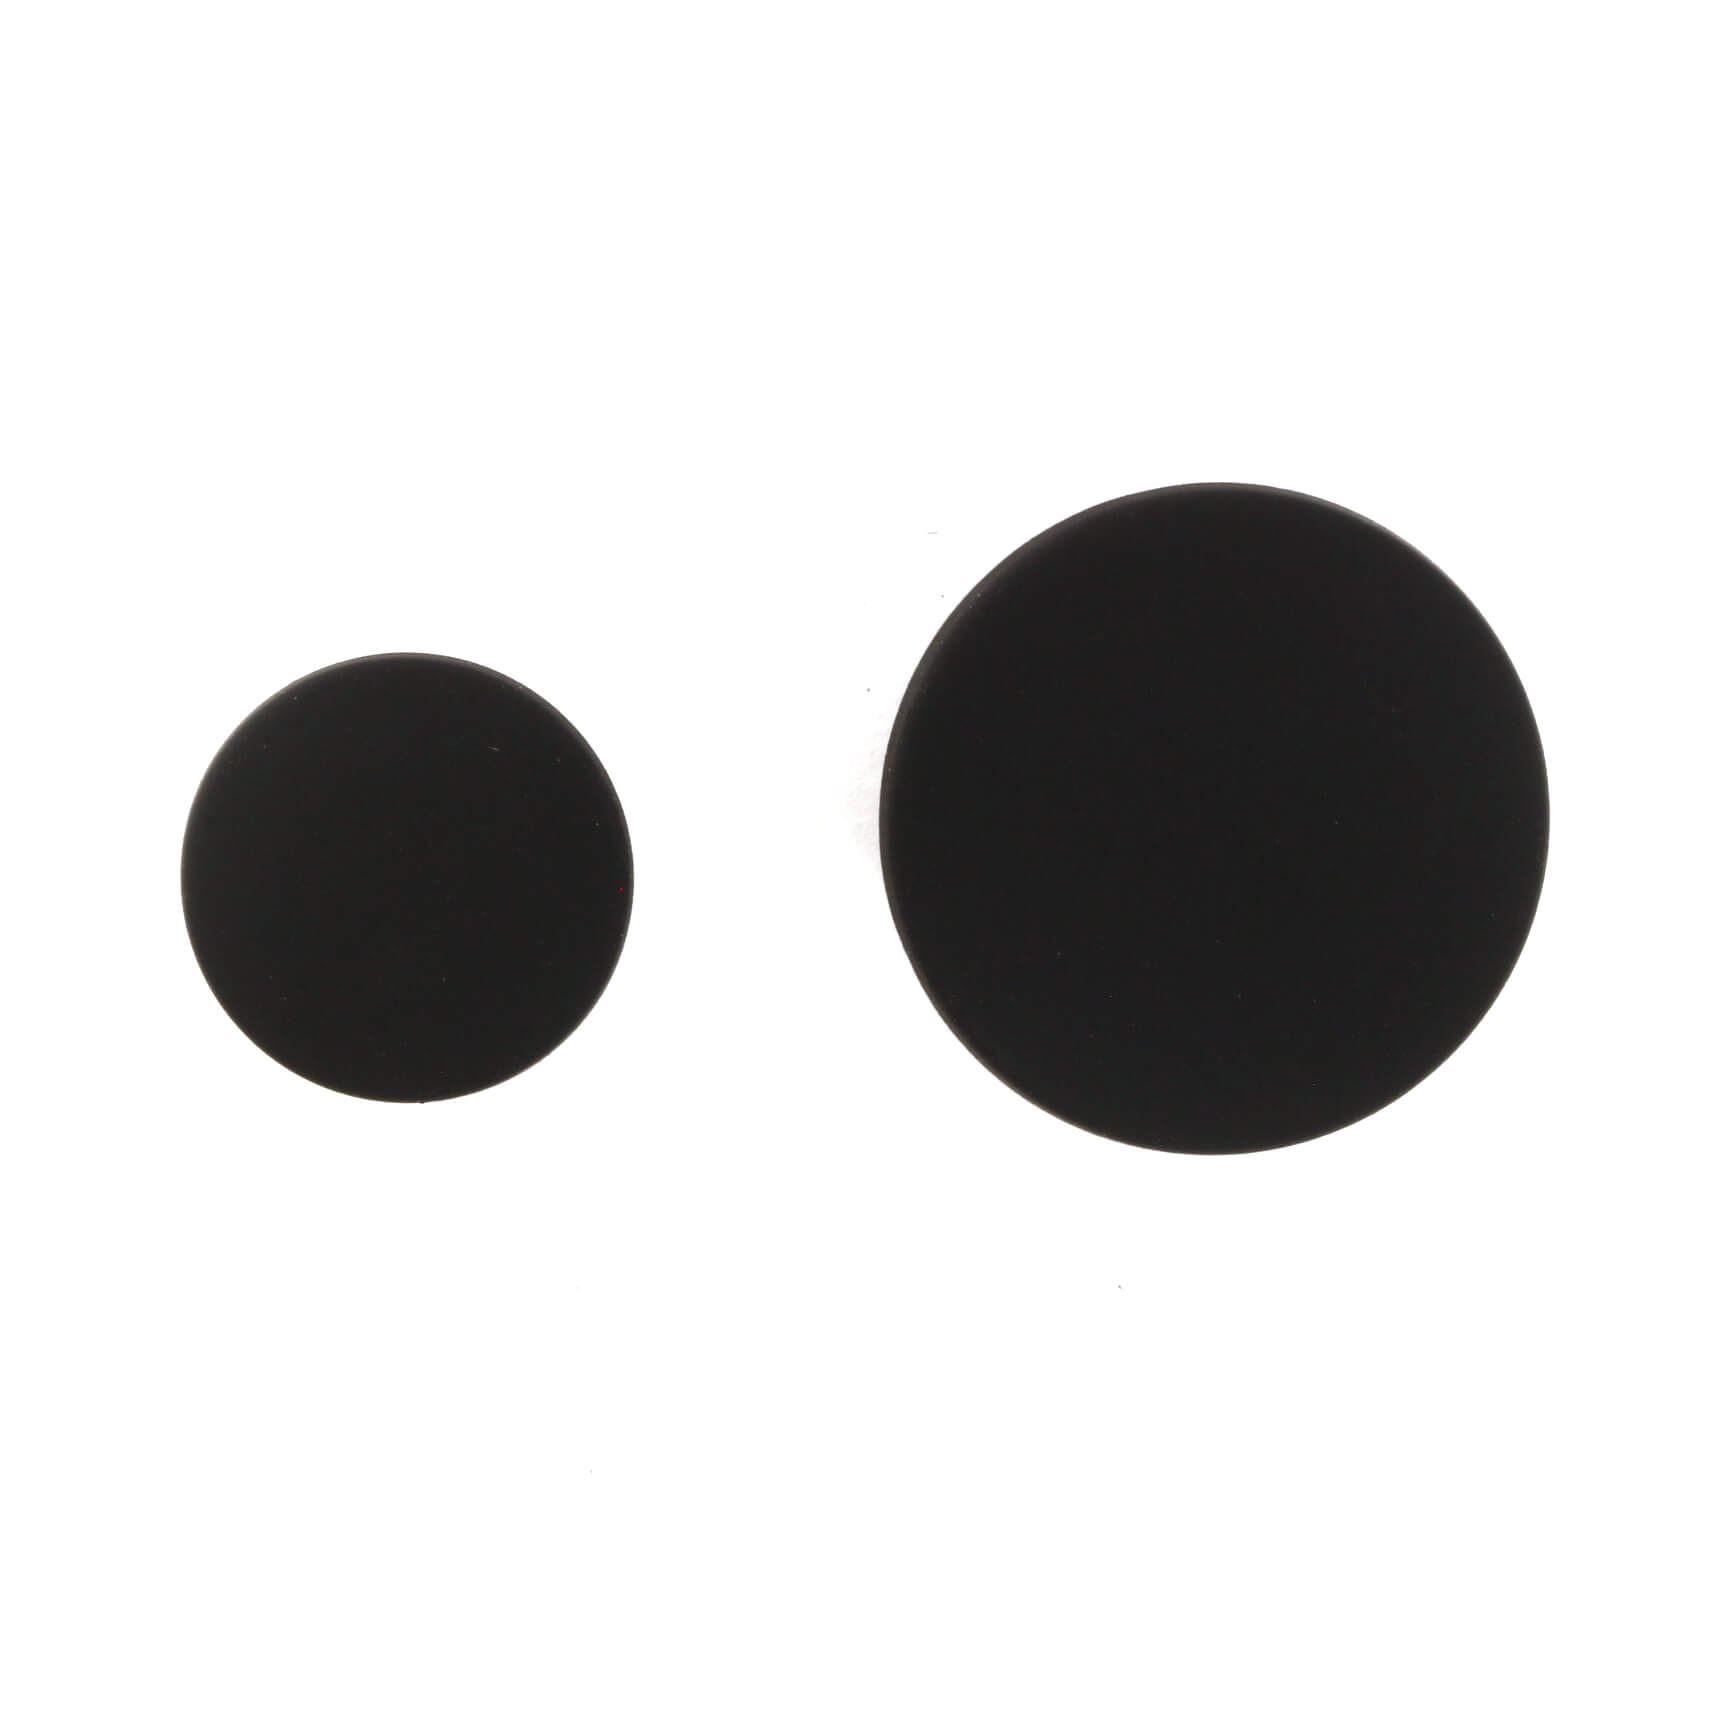 Пуговицы металлические Ø2,3 см, цвет Черный, фото 1